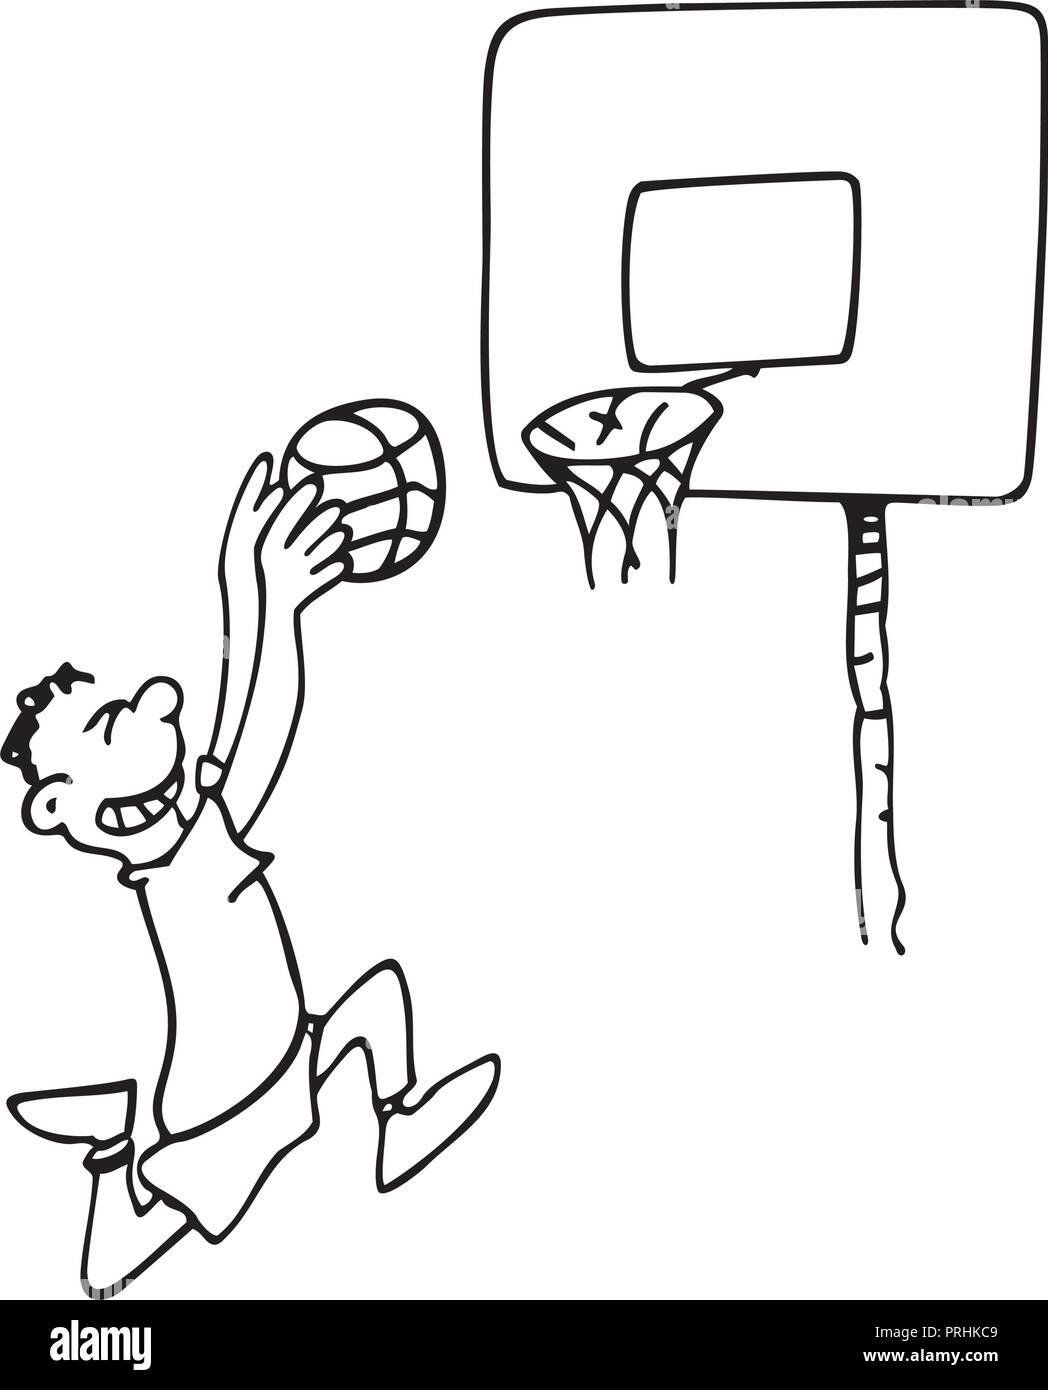 Basketball Illustration Stockfotos und -bilder Kaufen - Alamy